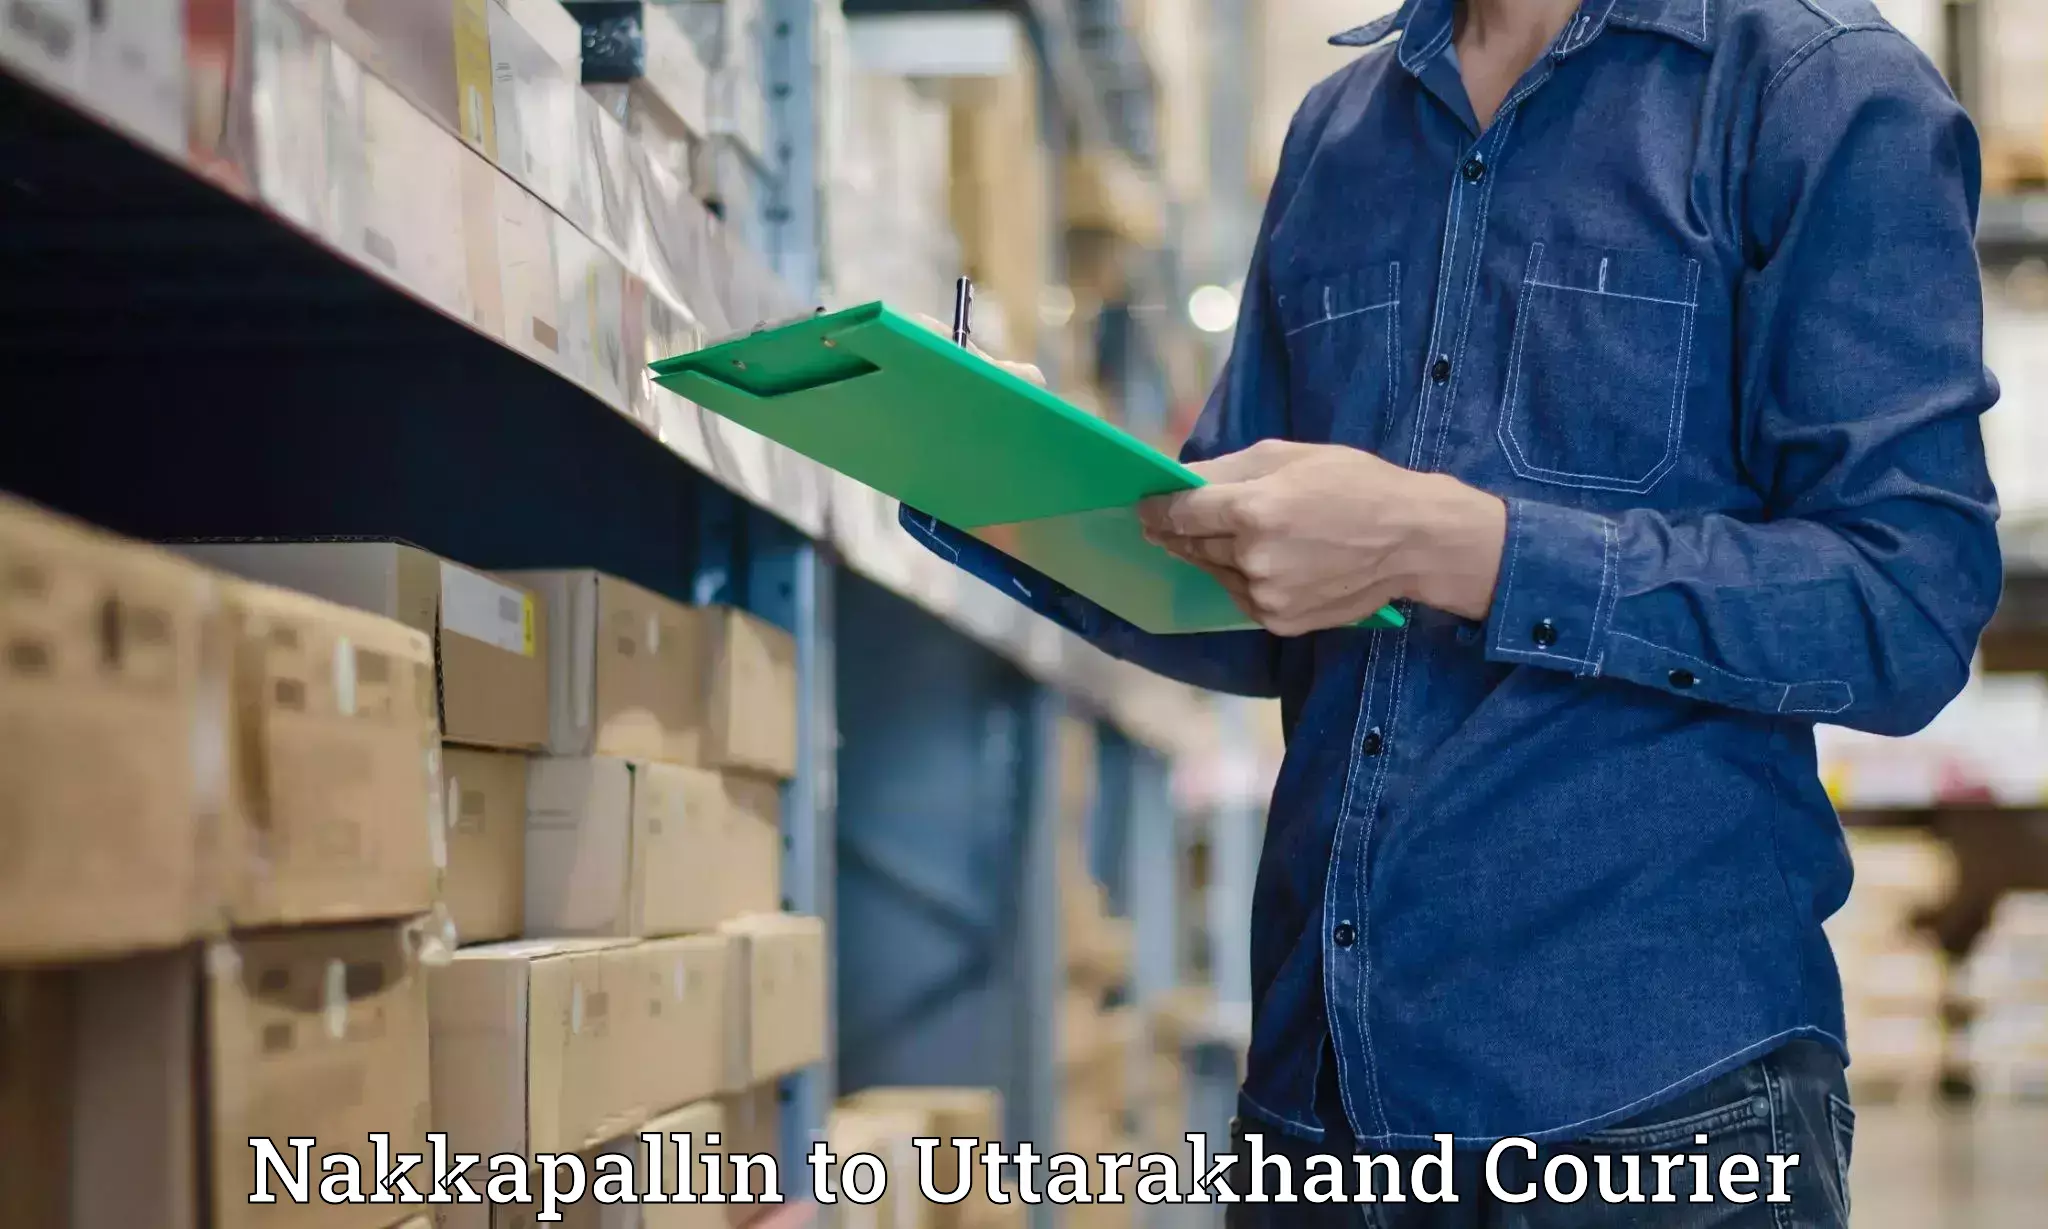 High-capacity parcel service Nakkapallin to Uttarkashi